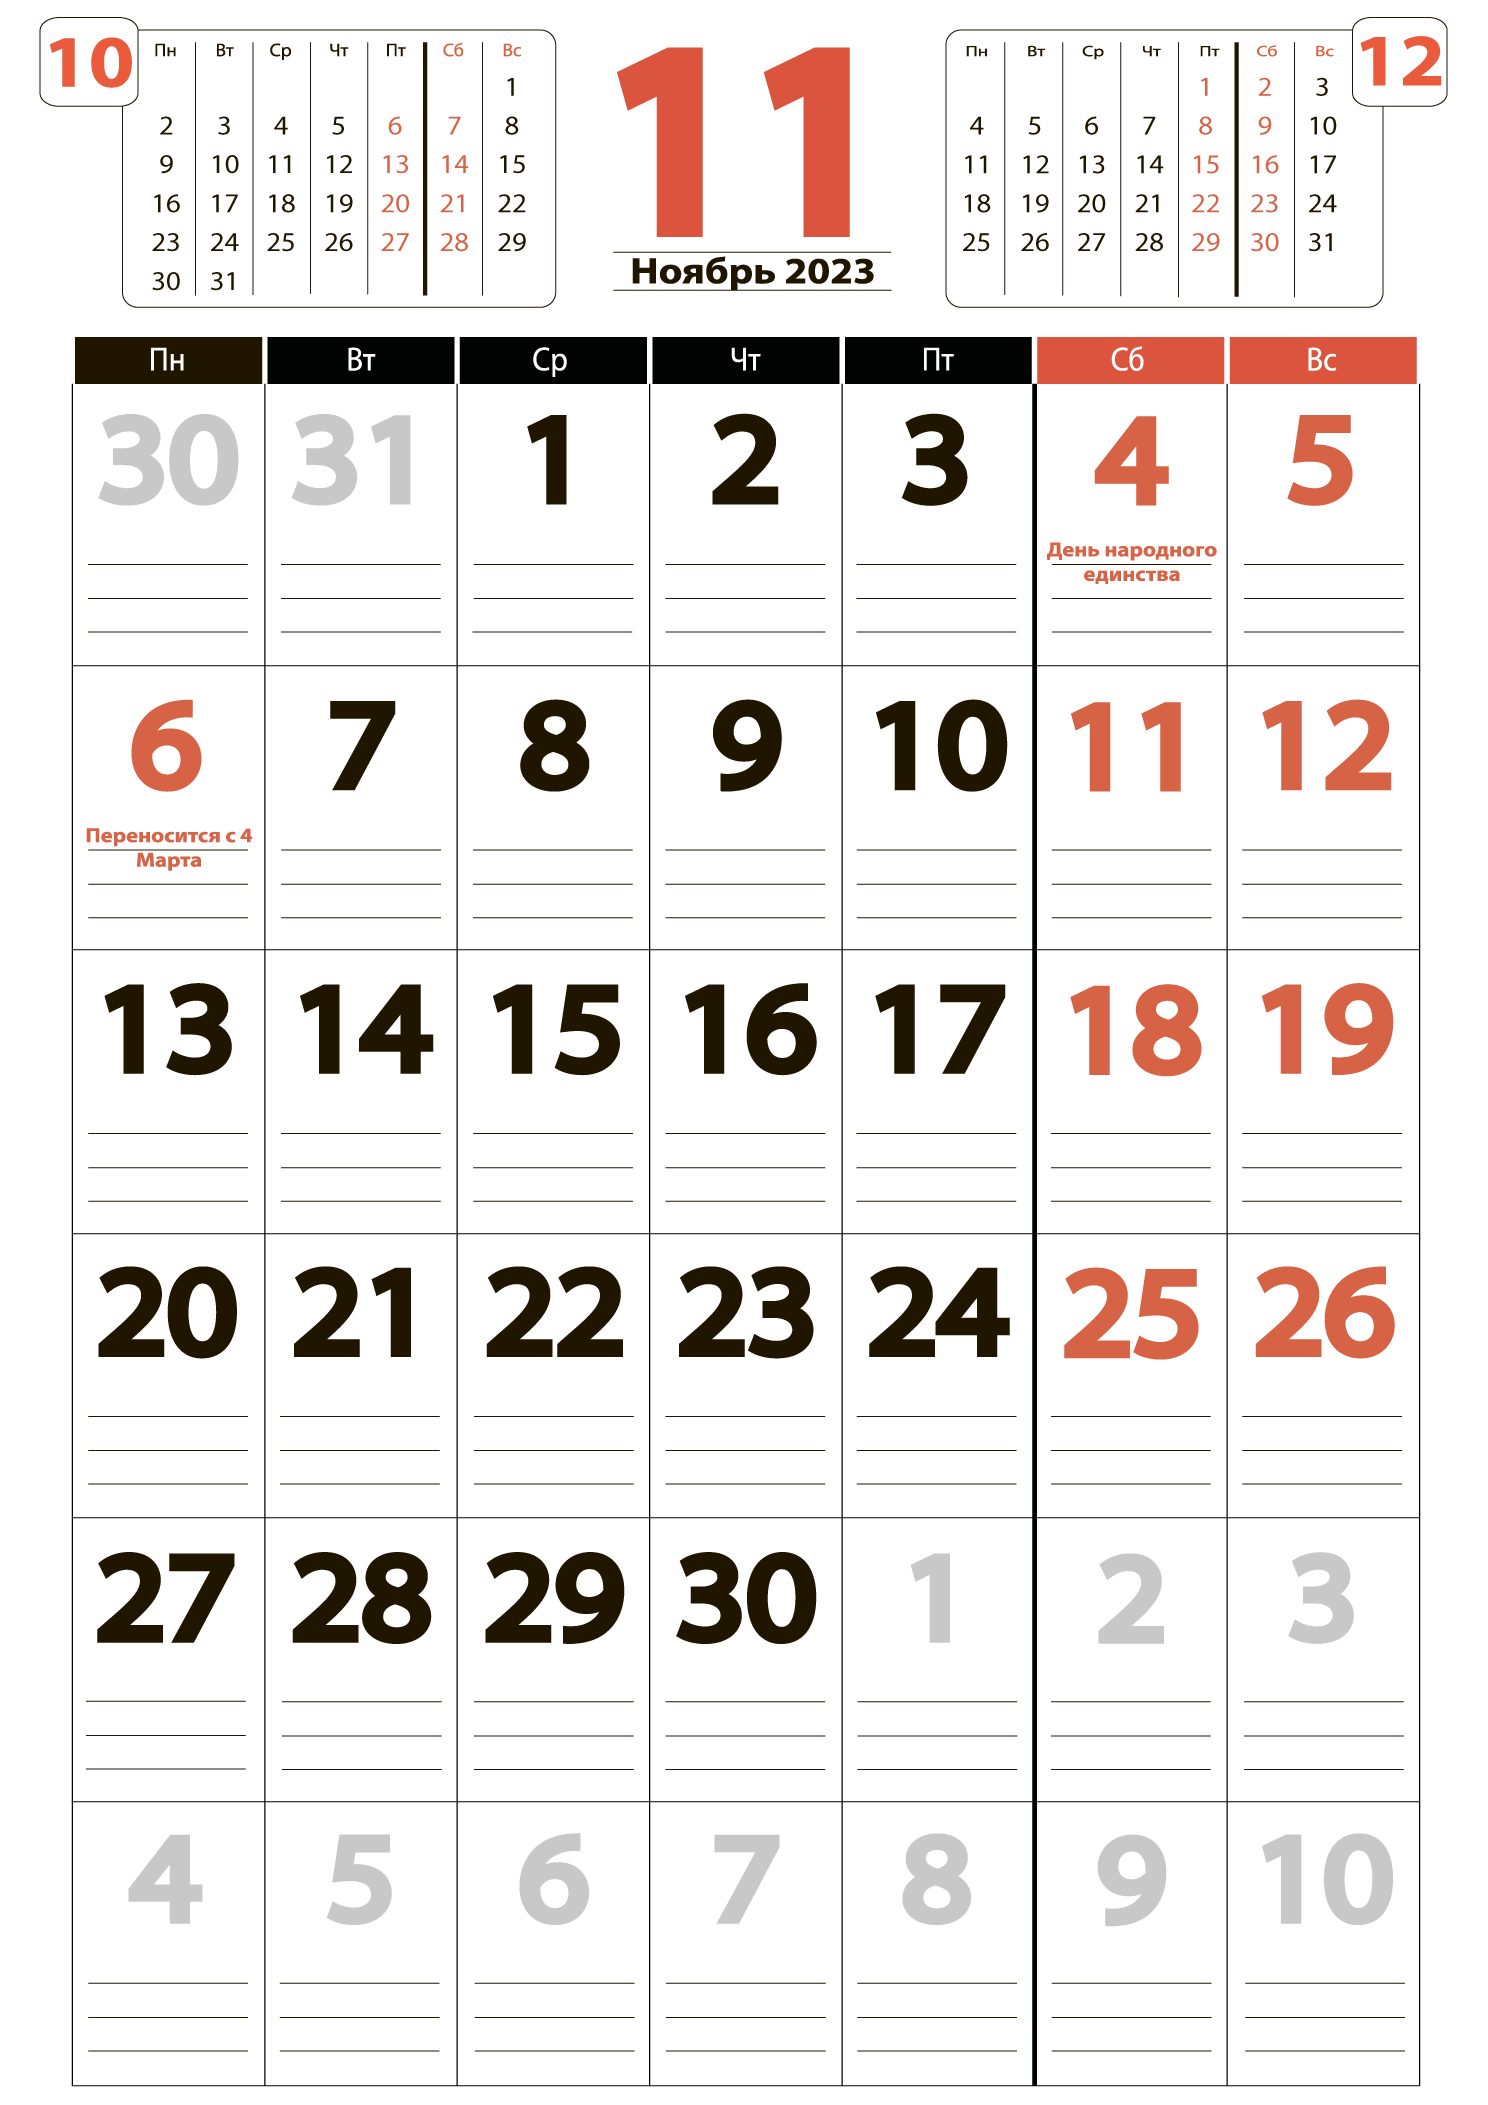 Печать крупного календаря на ноябрь 2023